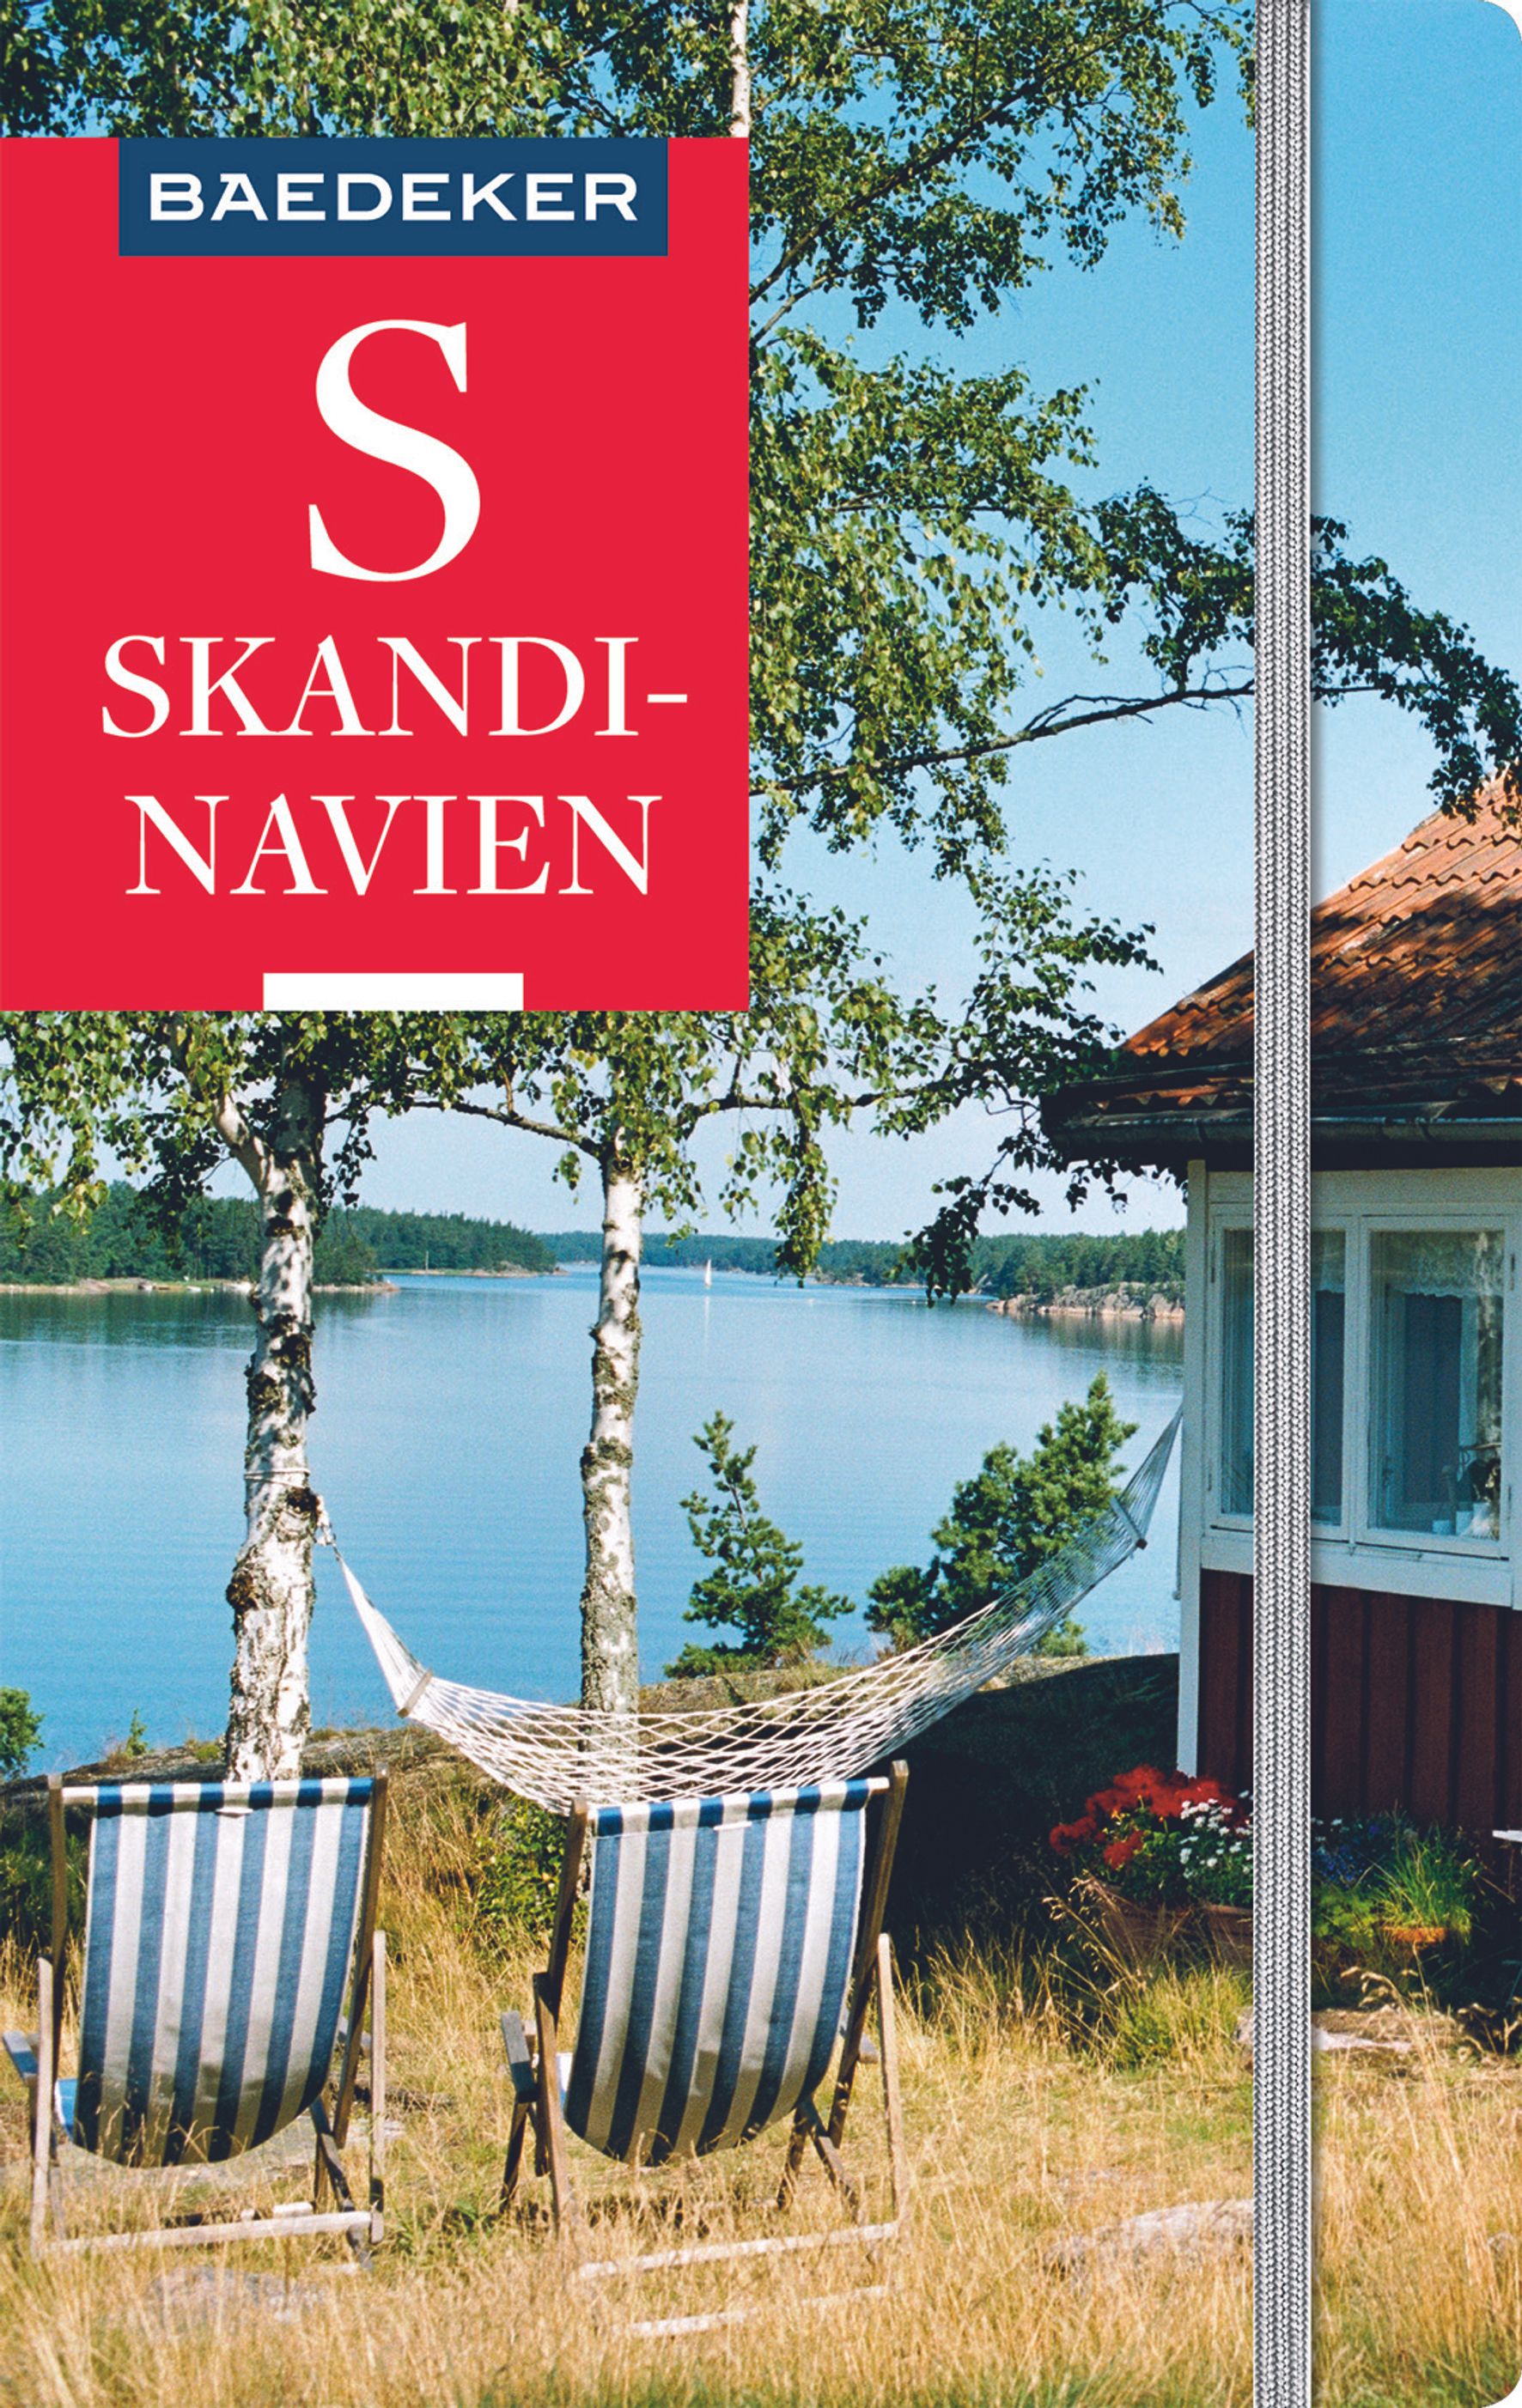 Baedeker Skandinavien, Norwegen, Schweden, Finnland (eBook)